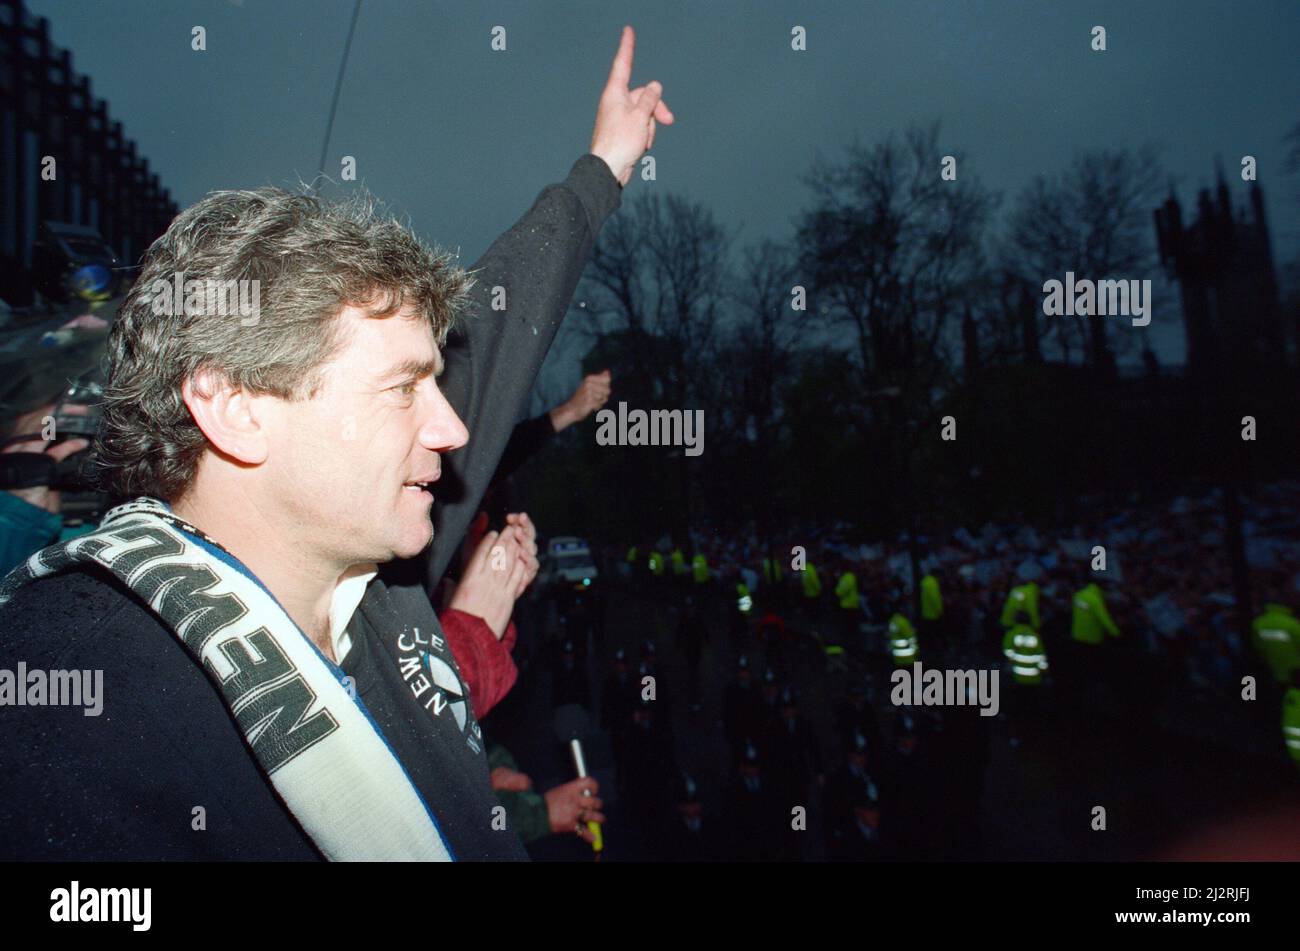 Newcastle United feiert, als sie die League Division 1 gewinnen. Manager Kevin Keegan und Spieler im offenen Bus mit der Trophäe, Fans entlang der Route gesäumt. Mai 1993. Stockfoto